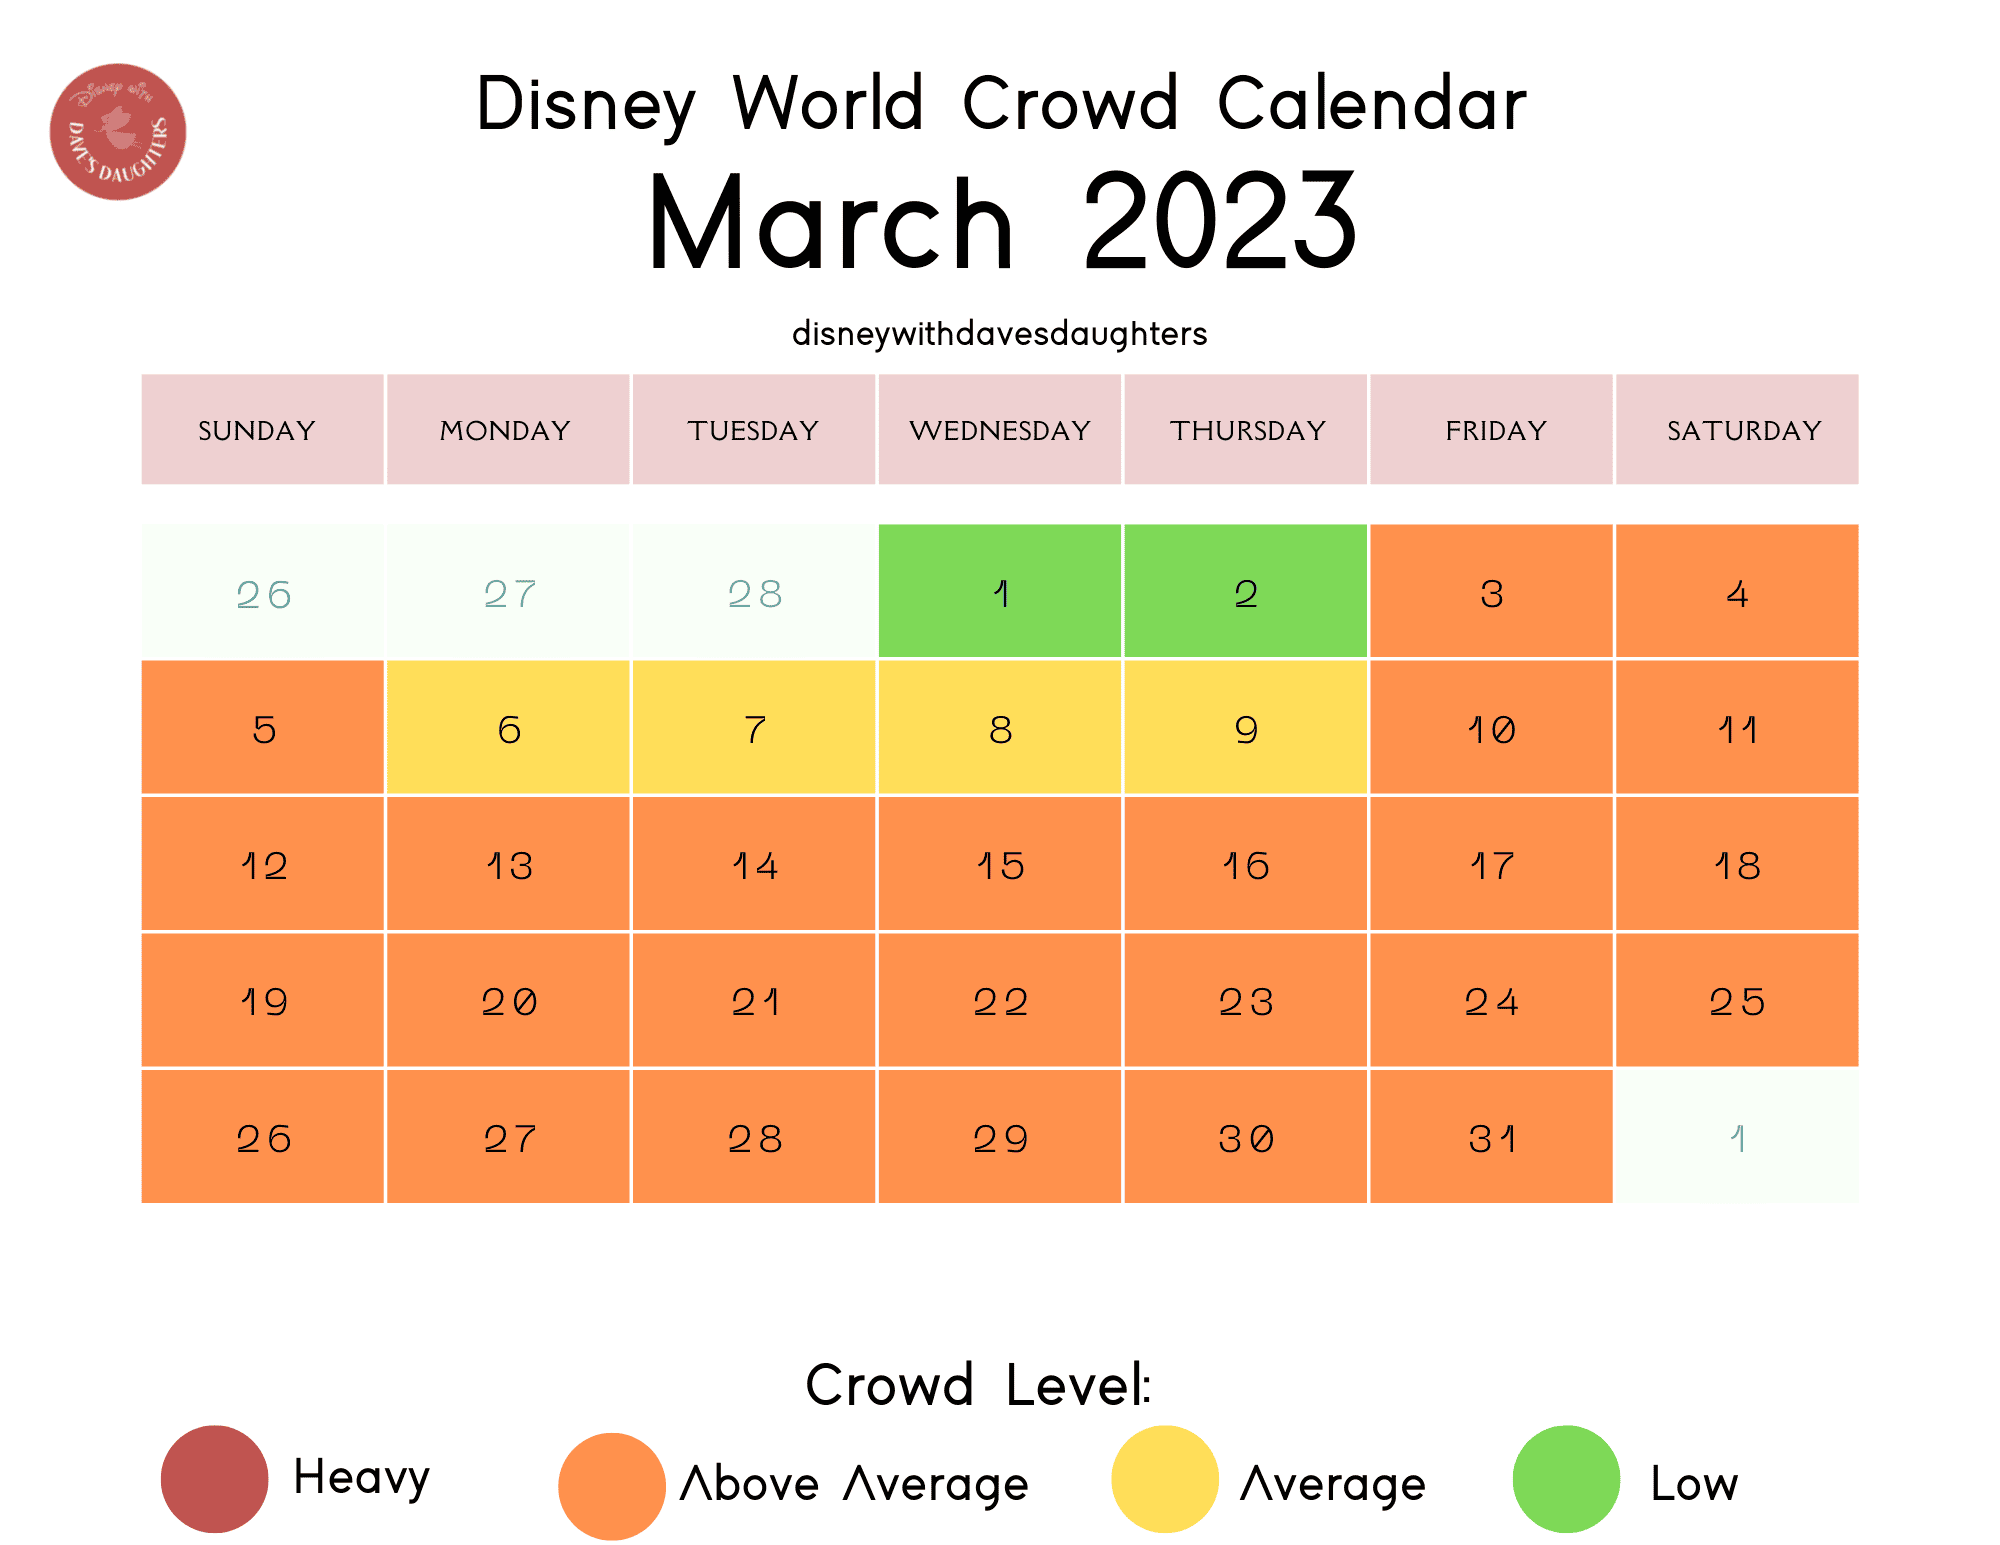 March 2023 Disney World Crowd Calendar